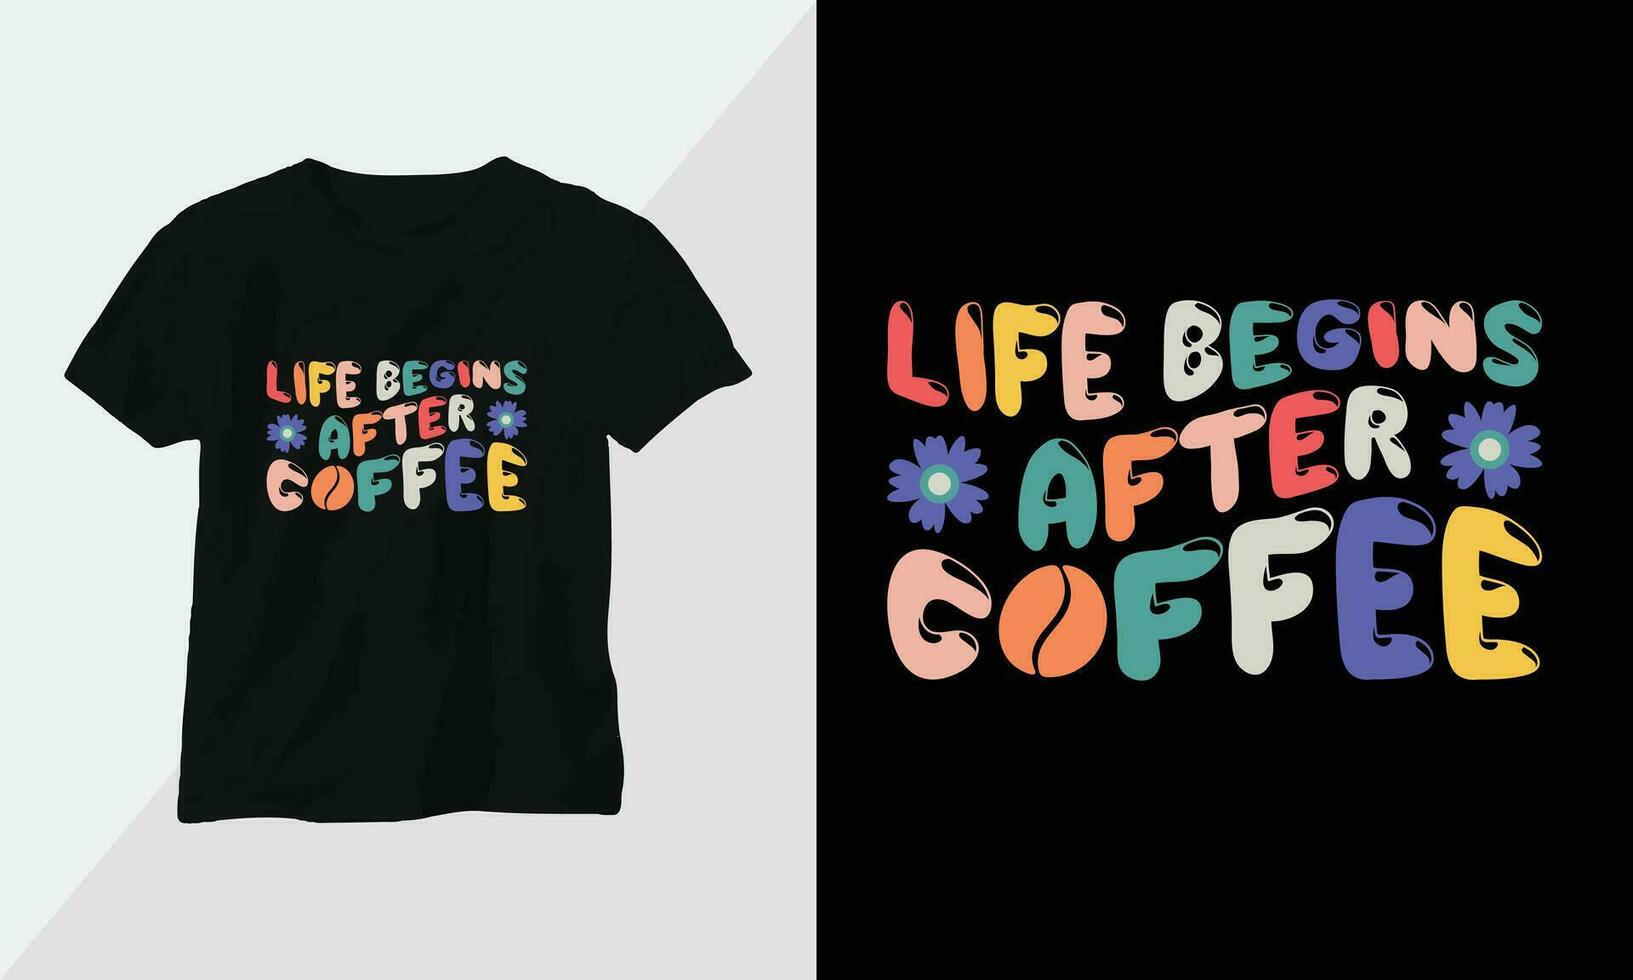 liv börjar efter kaffe - retro häftig inspirera t-shirt design med retro stil vektor